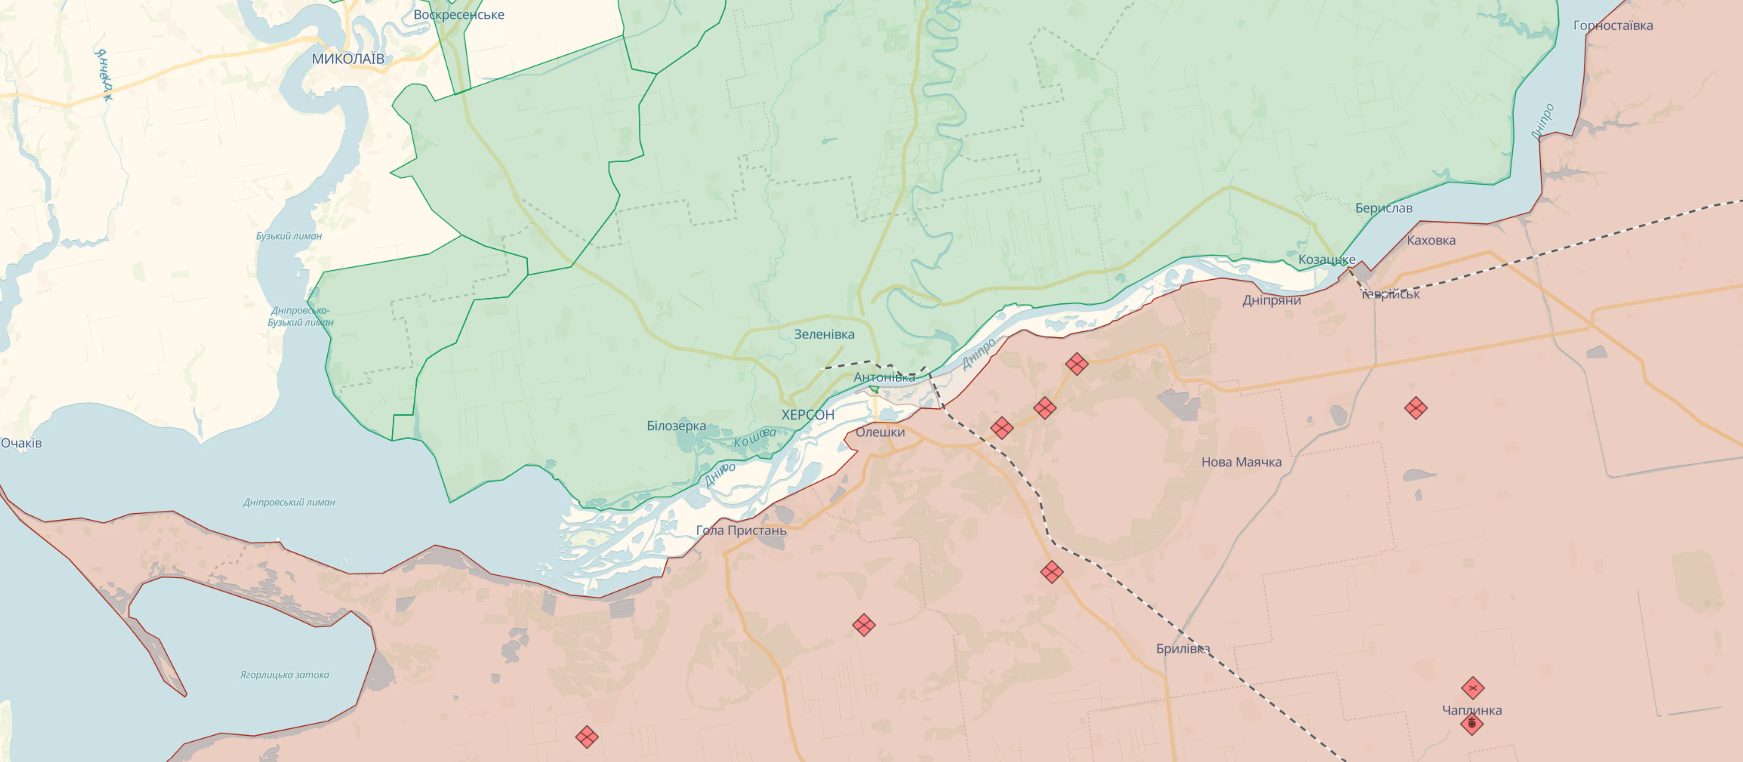 В Херсонской области активизировались бои на берегах нижнего течения Днепра: разведка Британии оценила ситуацию. Карта